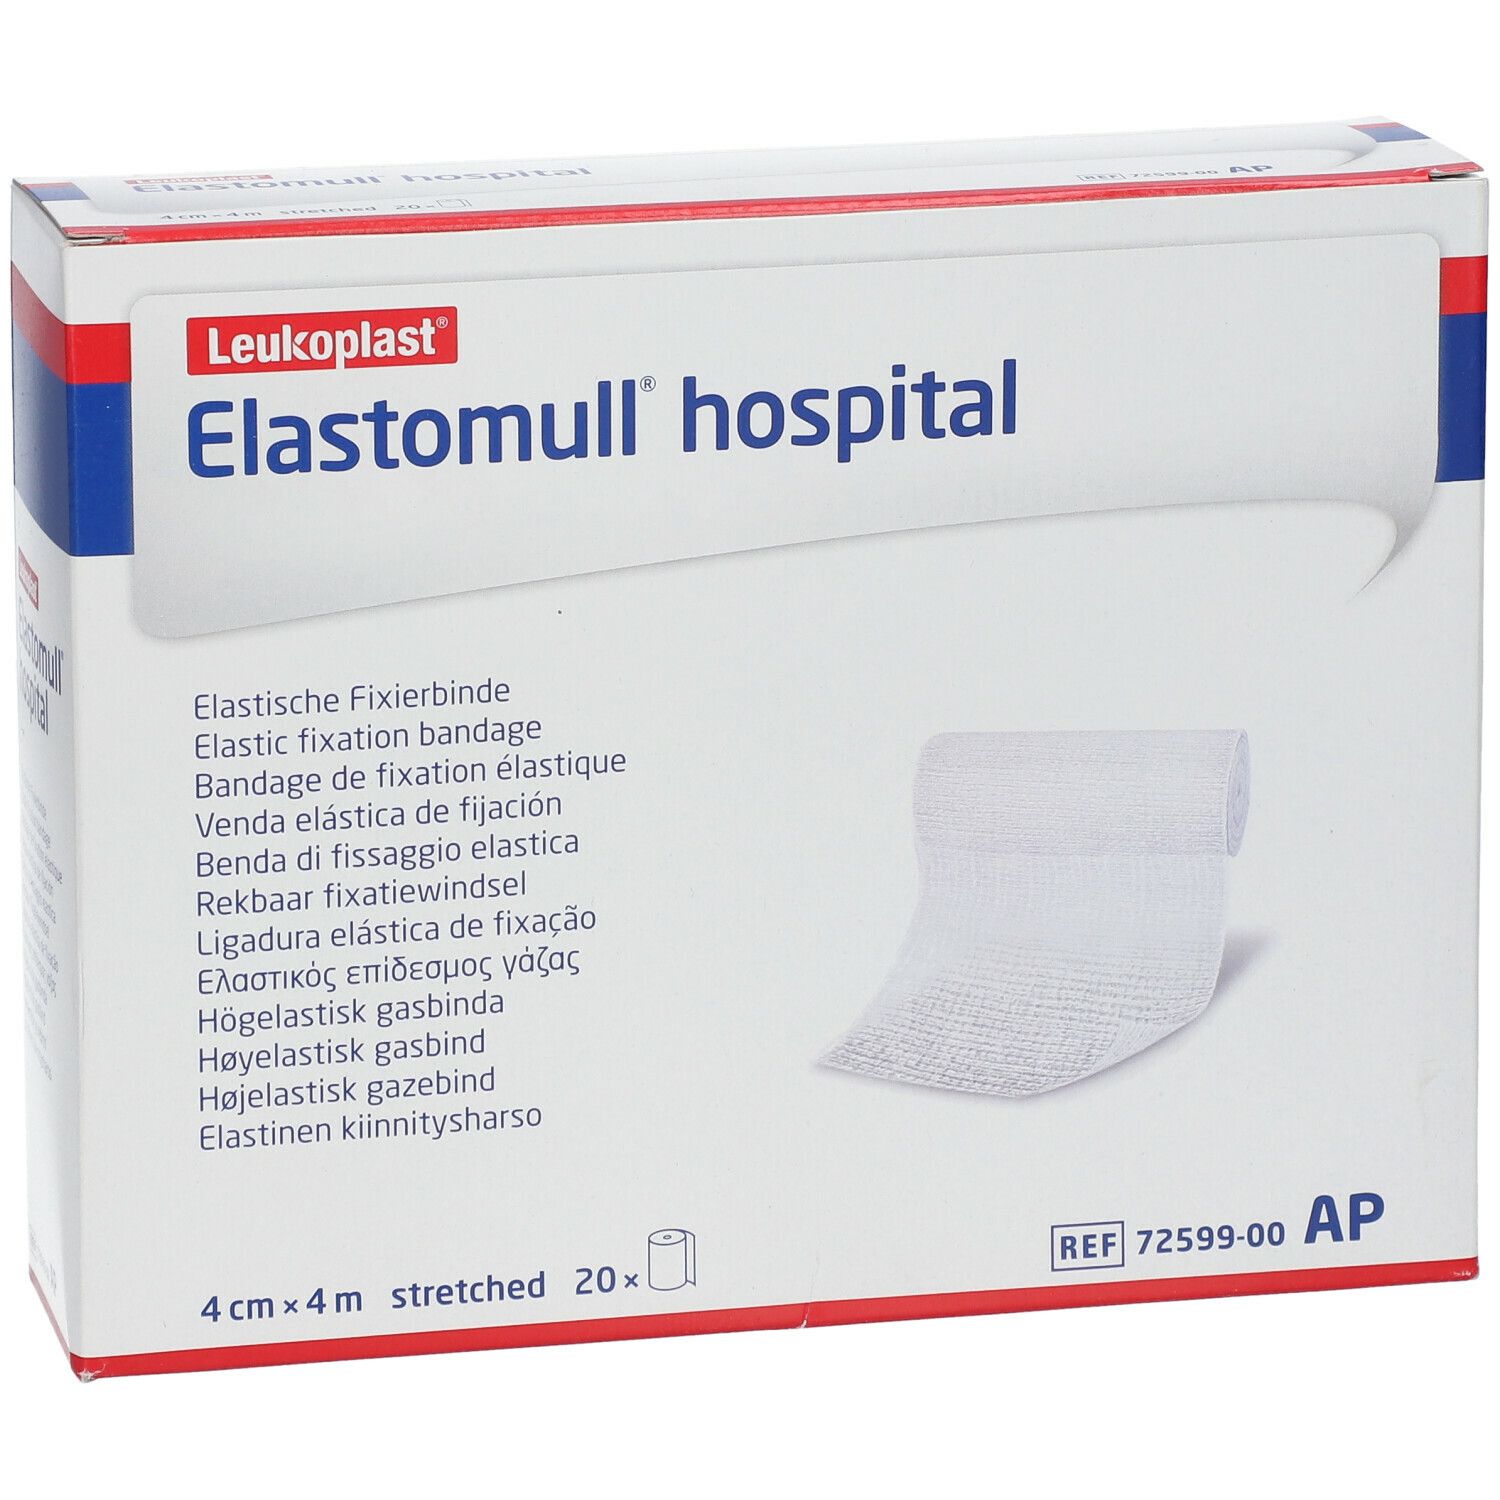 Elastomull® hospital elastische Fixierbinde 4 cm x 4 m